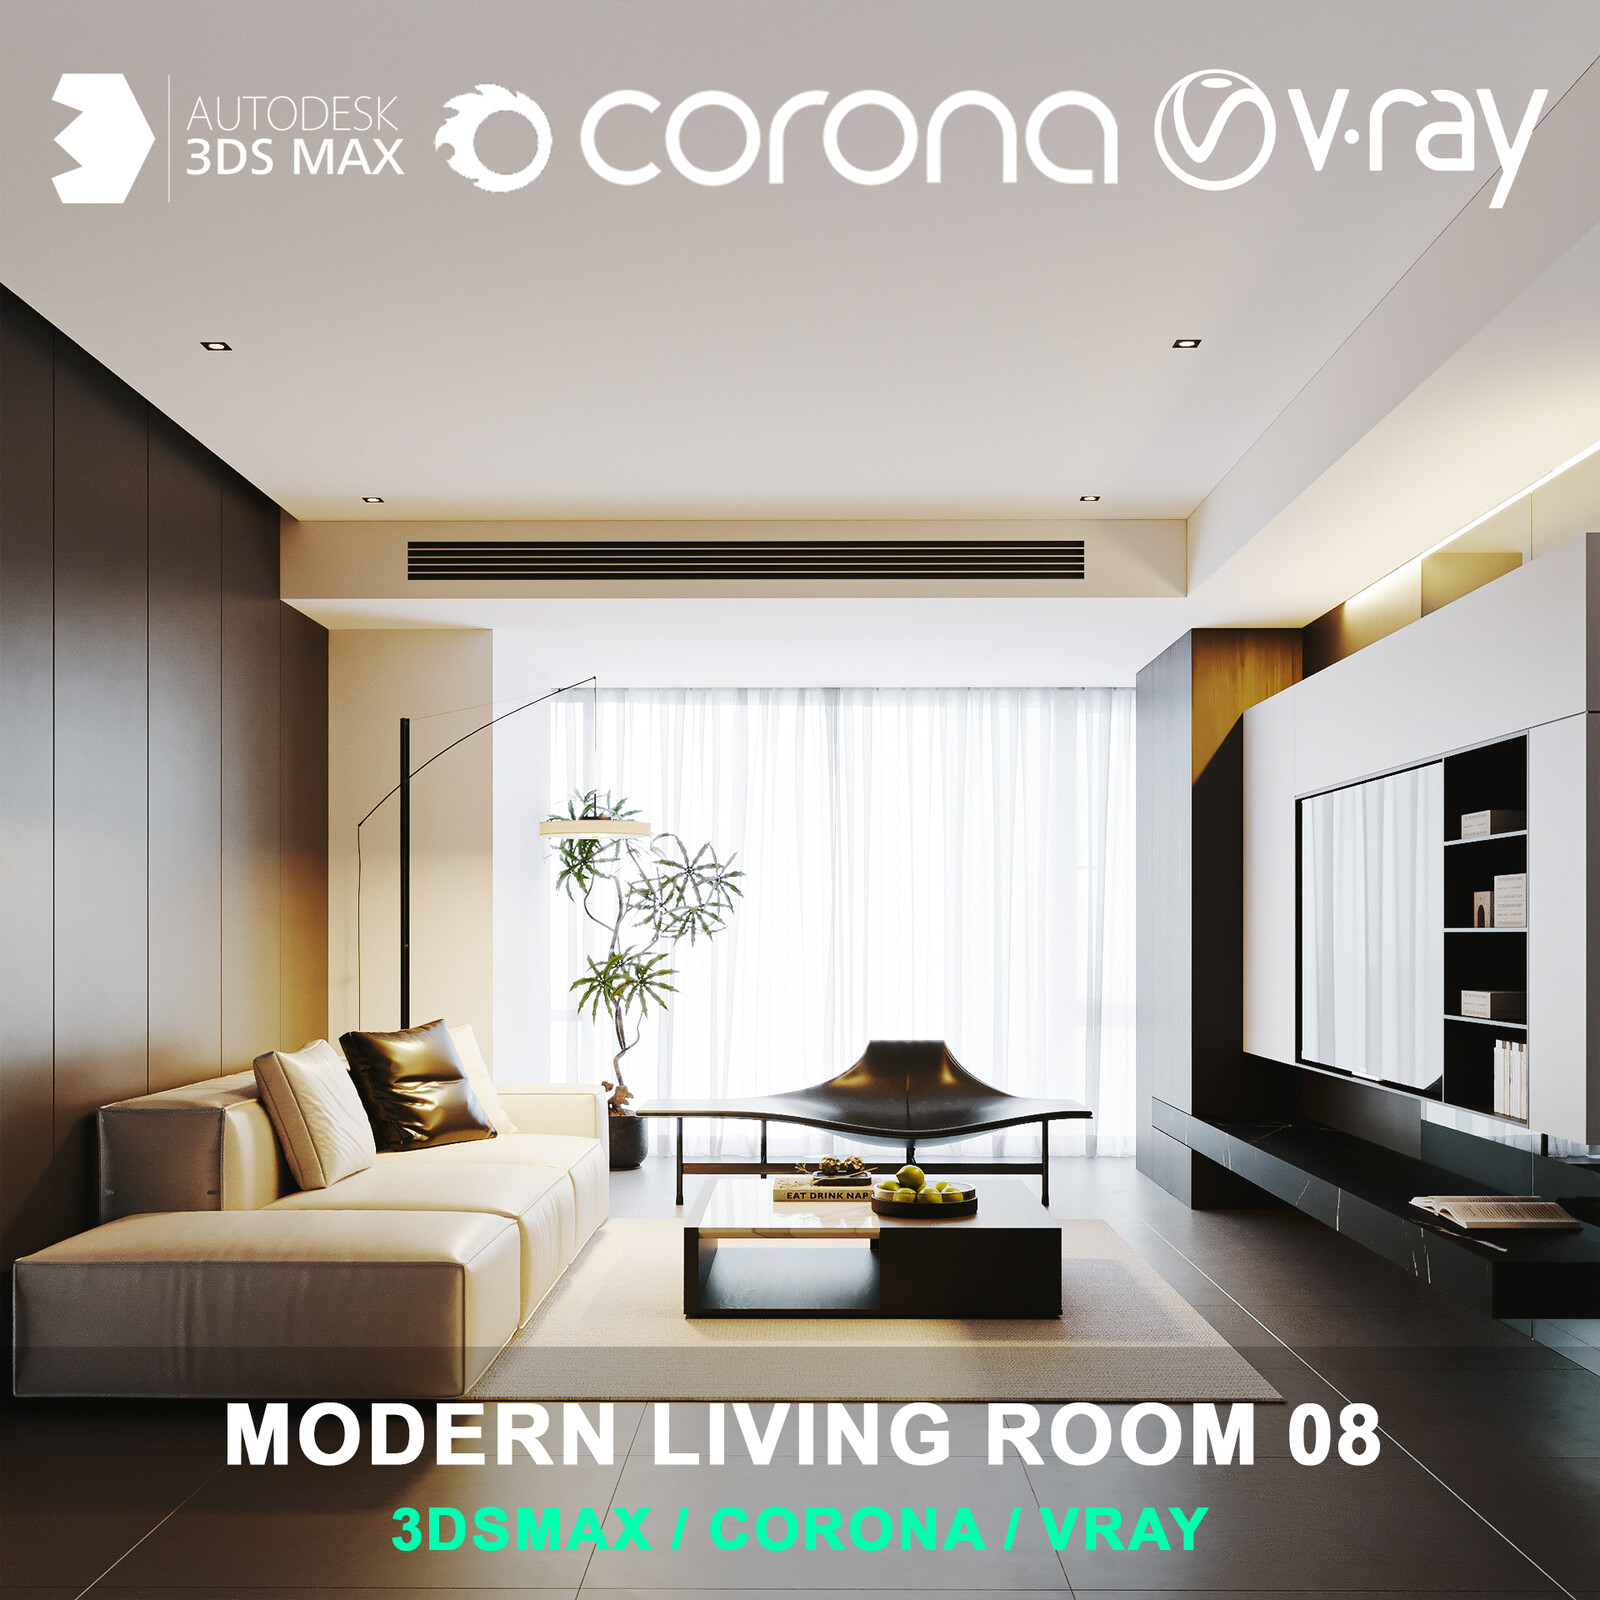 Modern living room 08 for 3DsMax